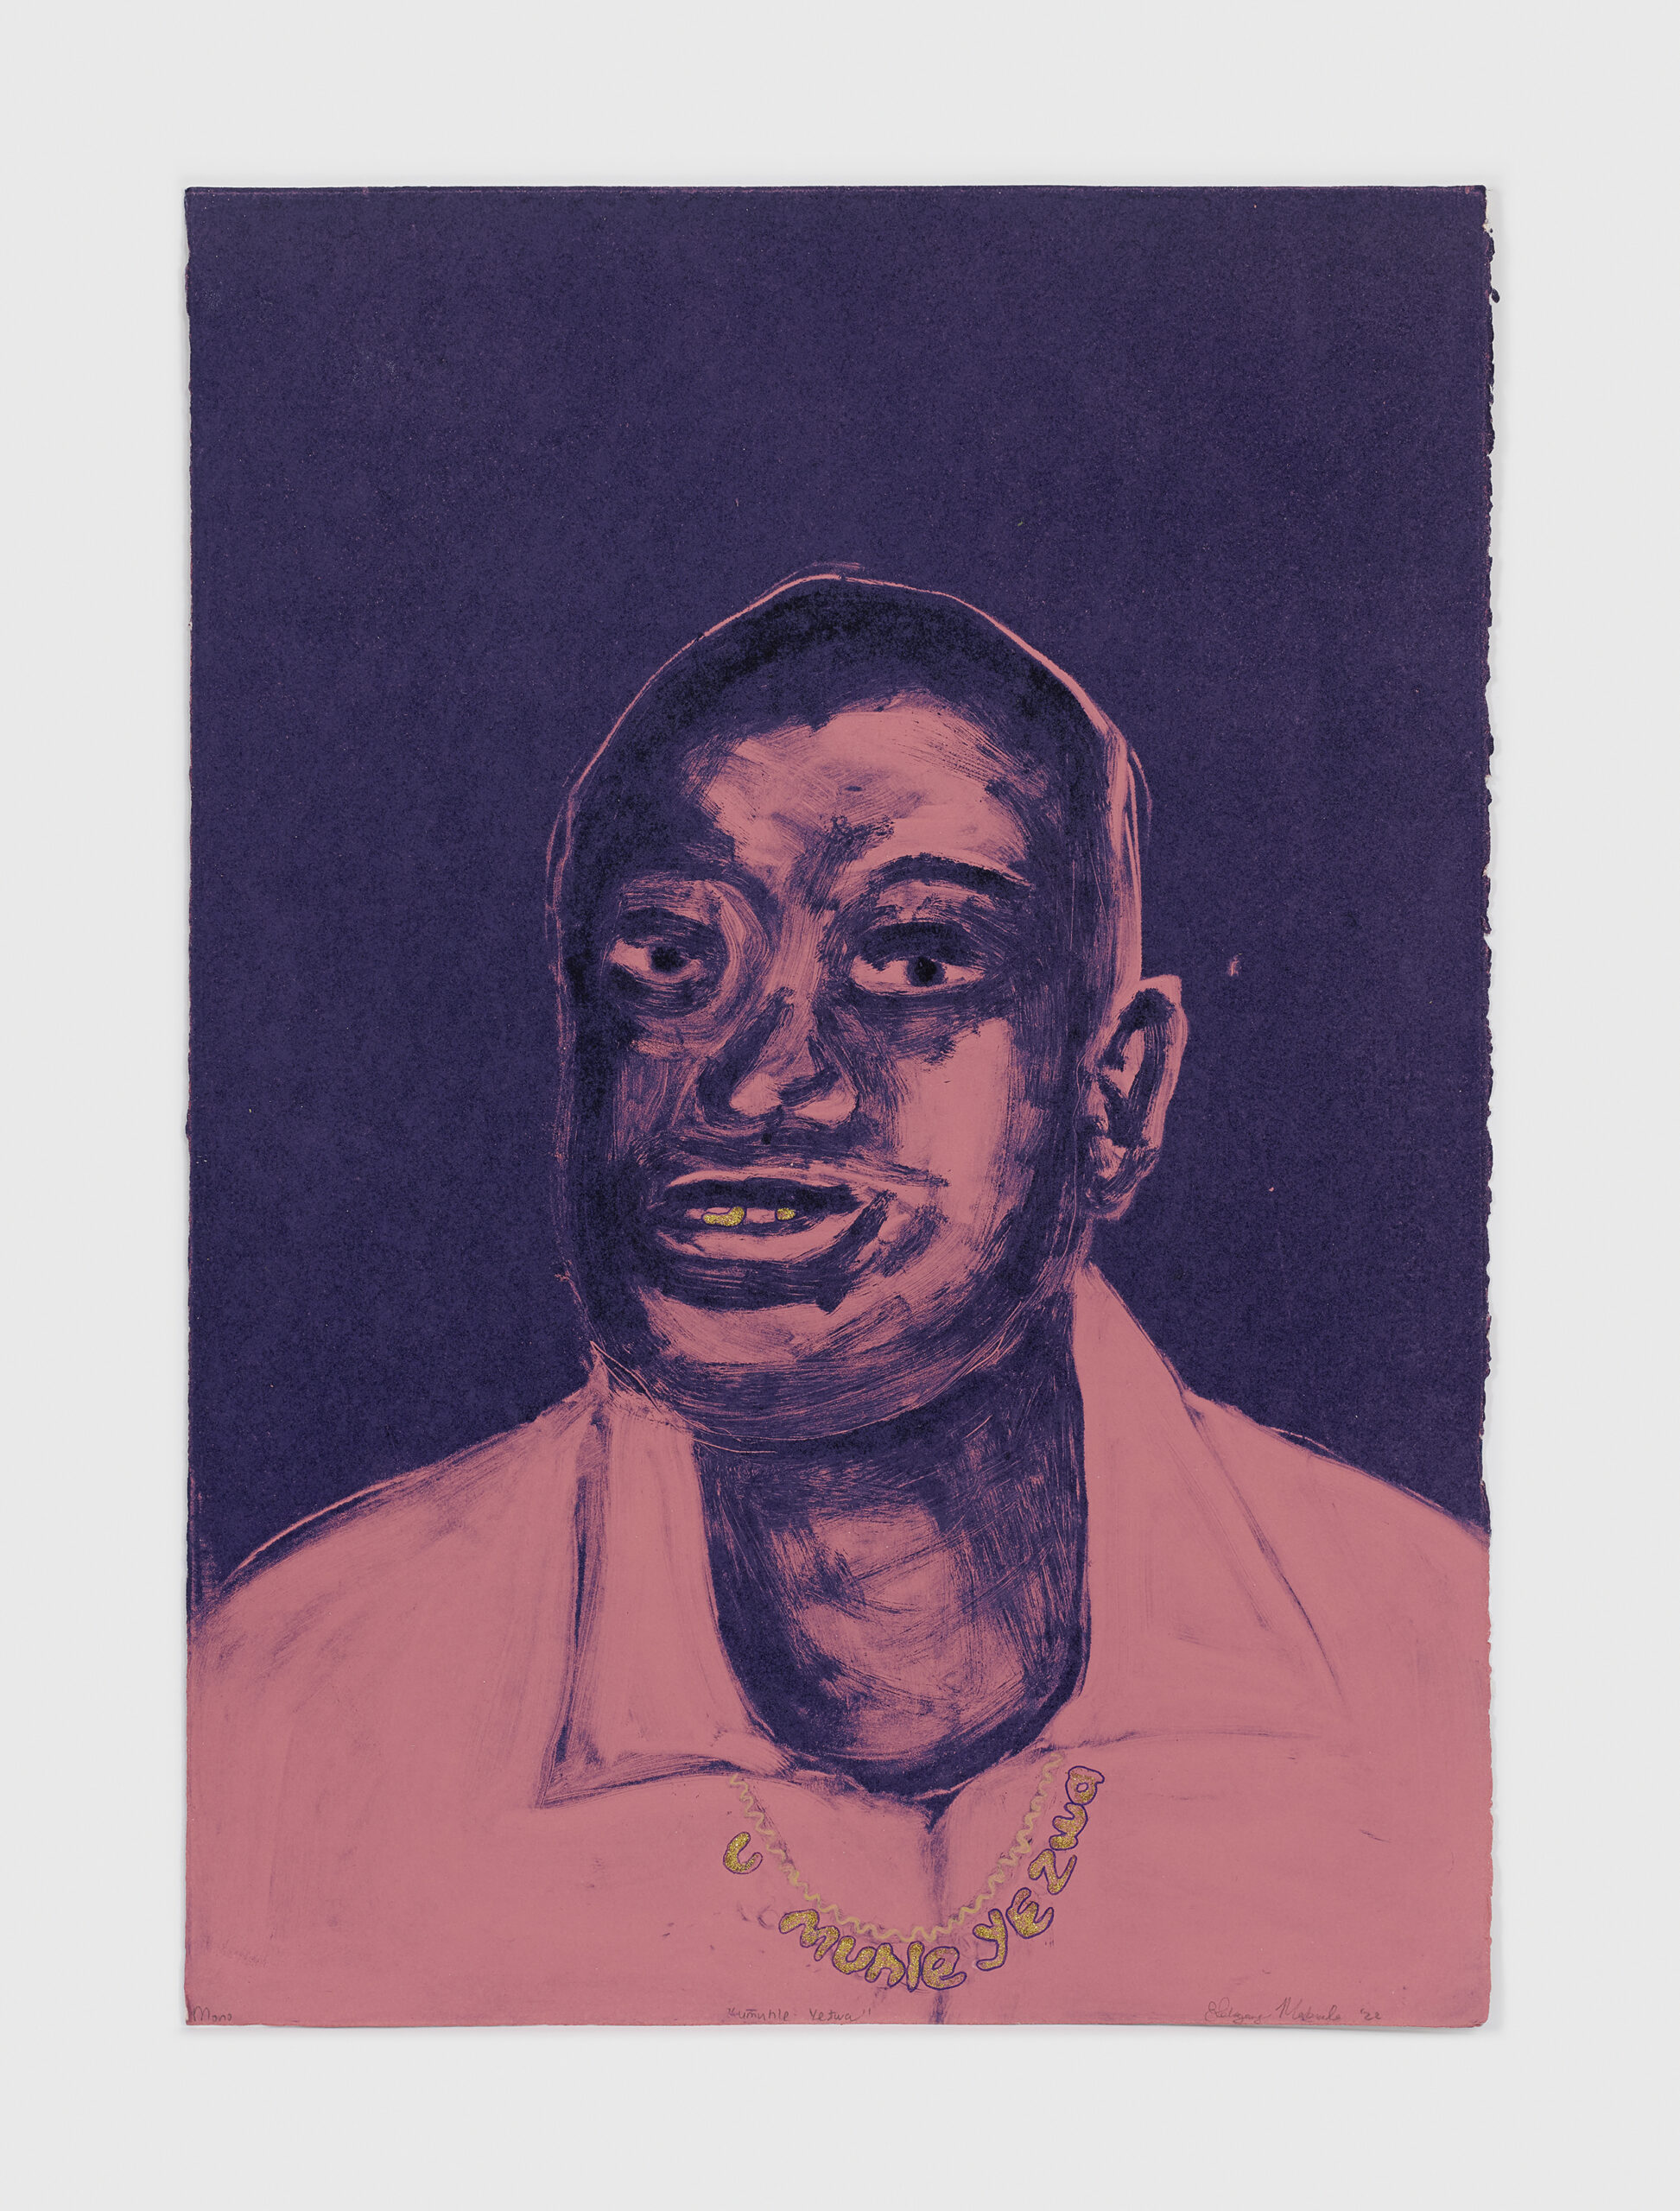 Lebogang Mabusela. U muhle yezwa, 2022. Oil-based monotype, acrylic and glitter on paper. 49.5 x 35.5cm unframed. (Courtesy of Stevenson)